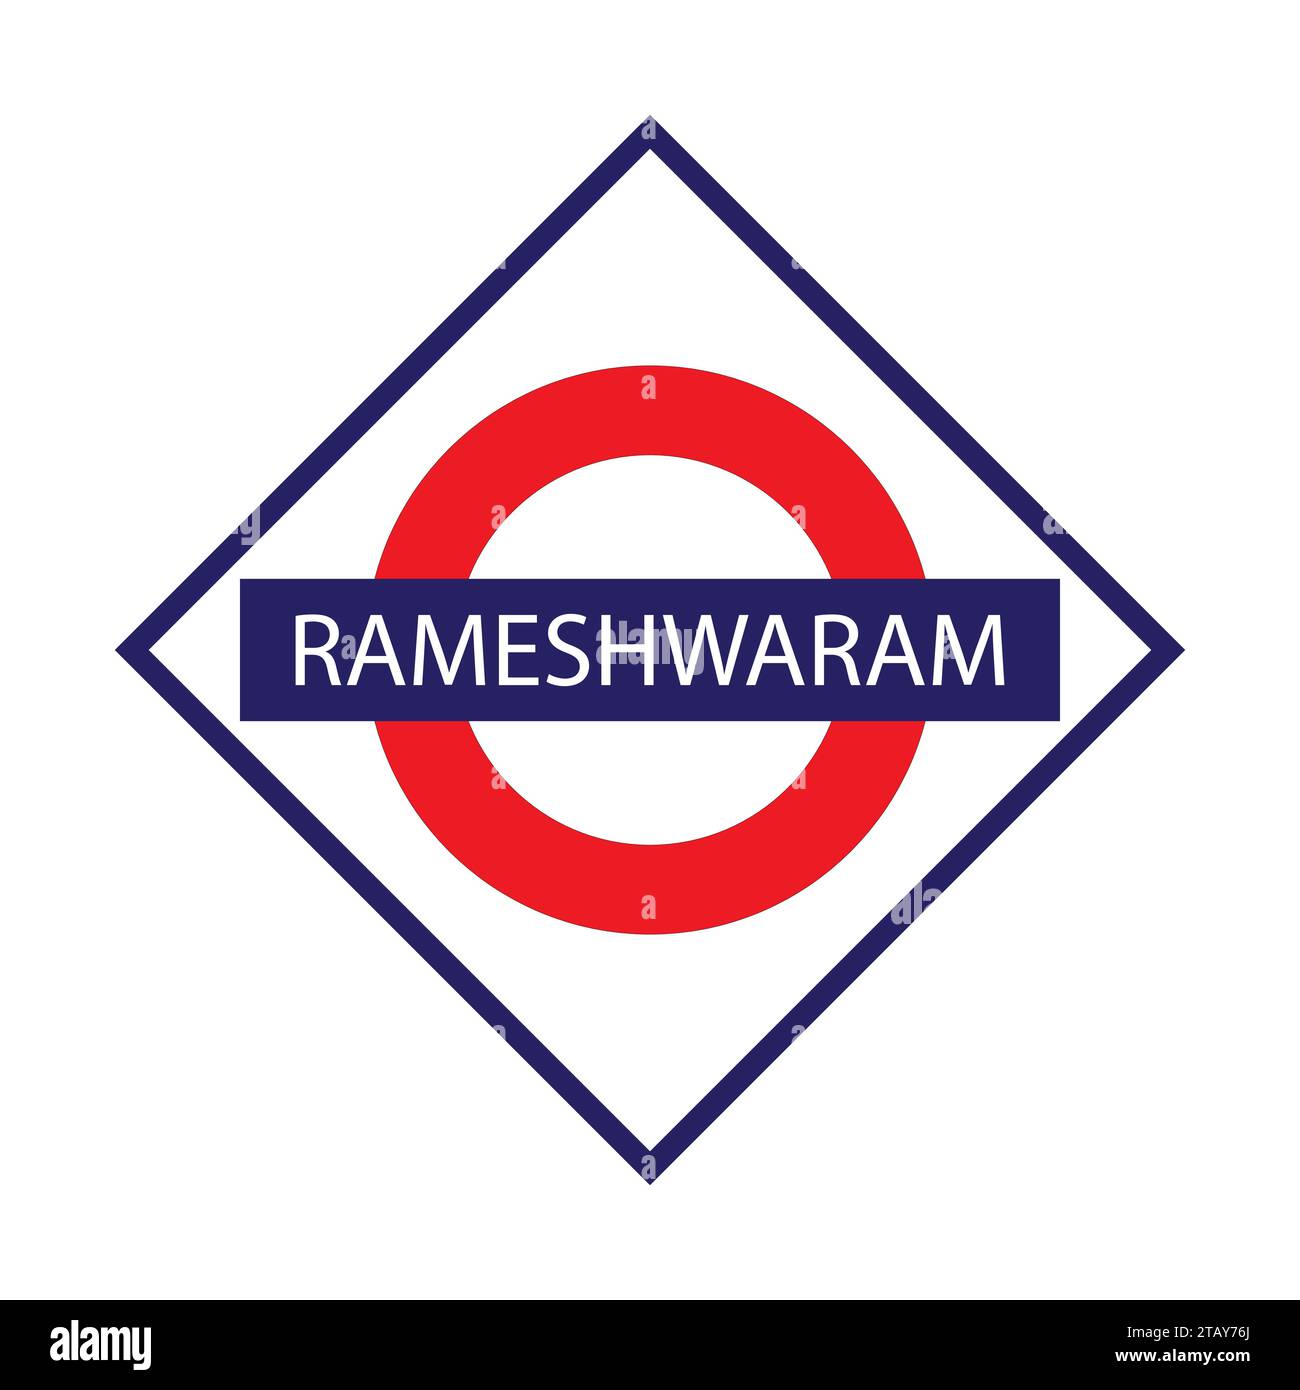 Rameshwaram Junction Railways Namensschild isoliert auf weiß Stock Vektor